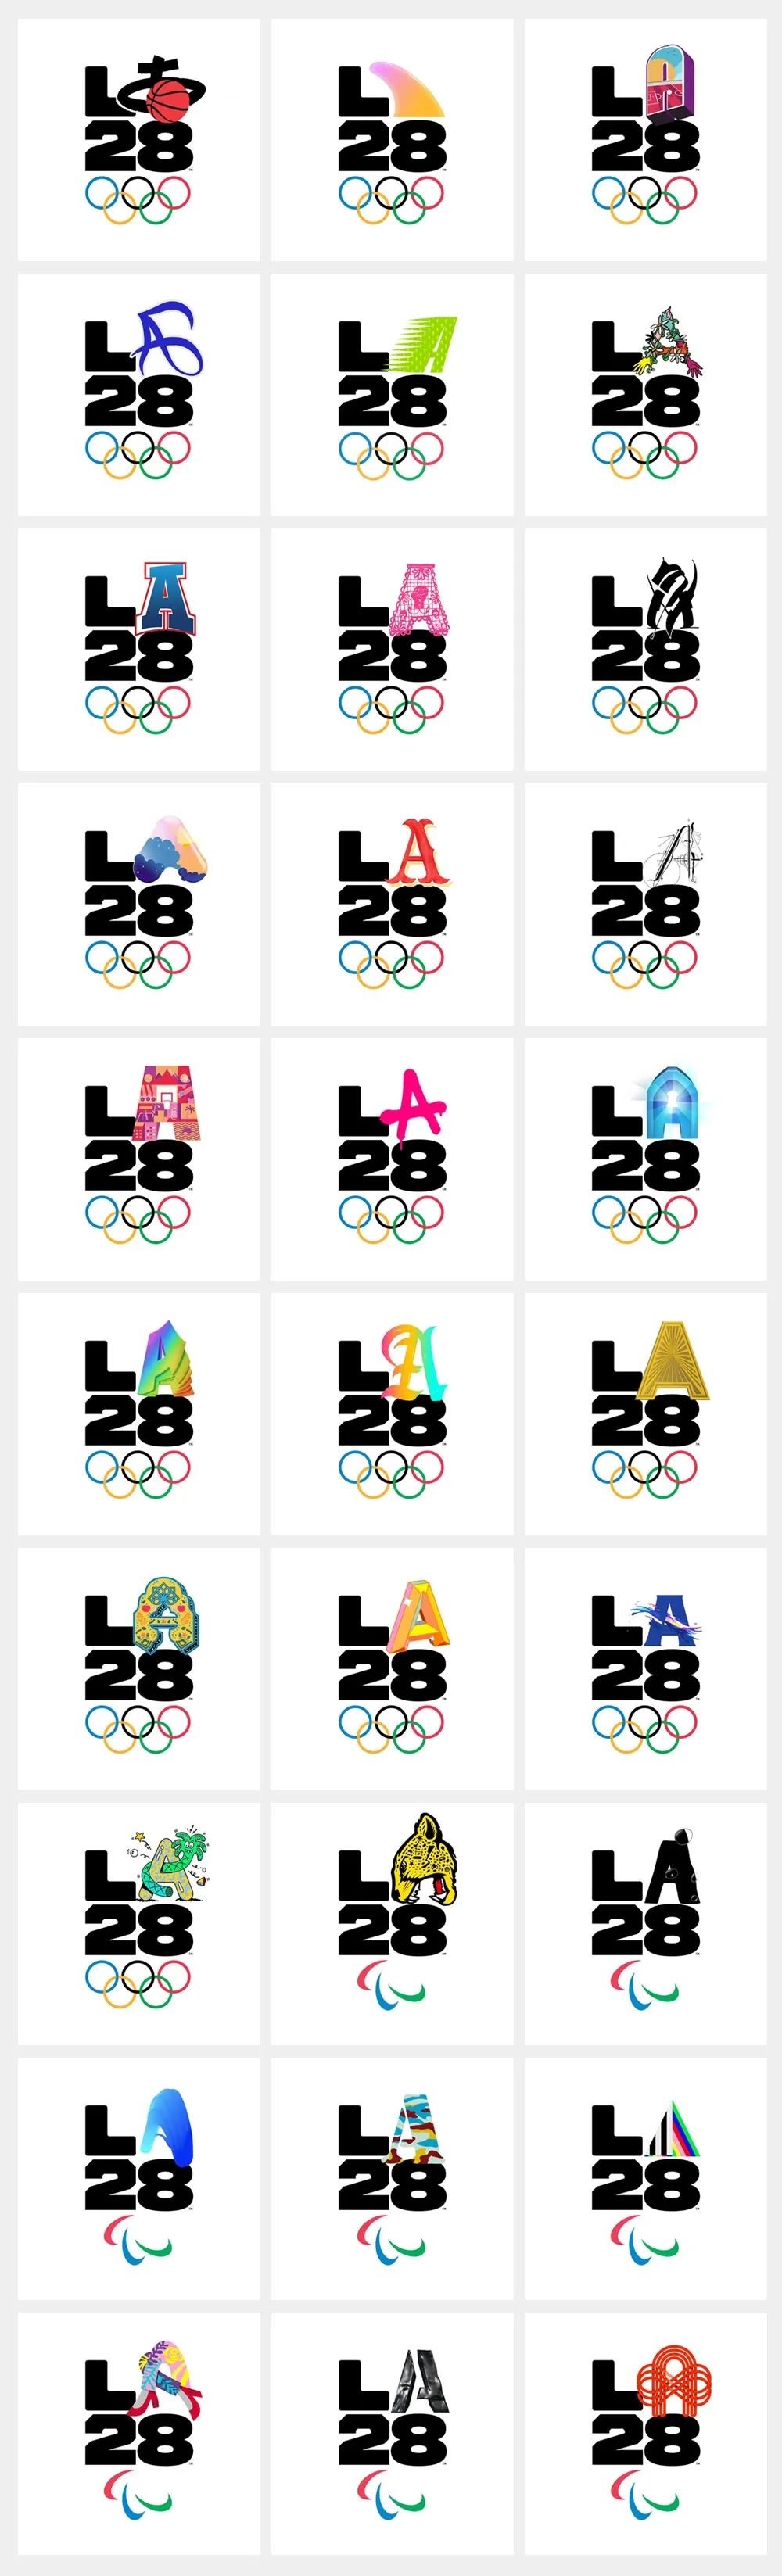 2028年洛杉矶奥运会残奥会会徽LOGO设计延展